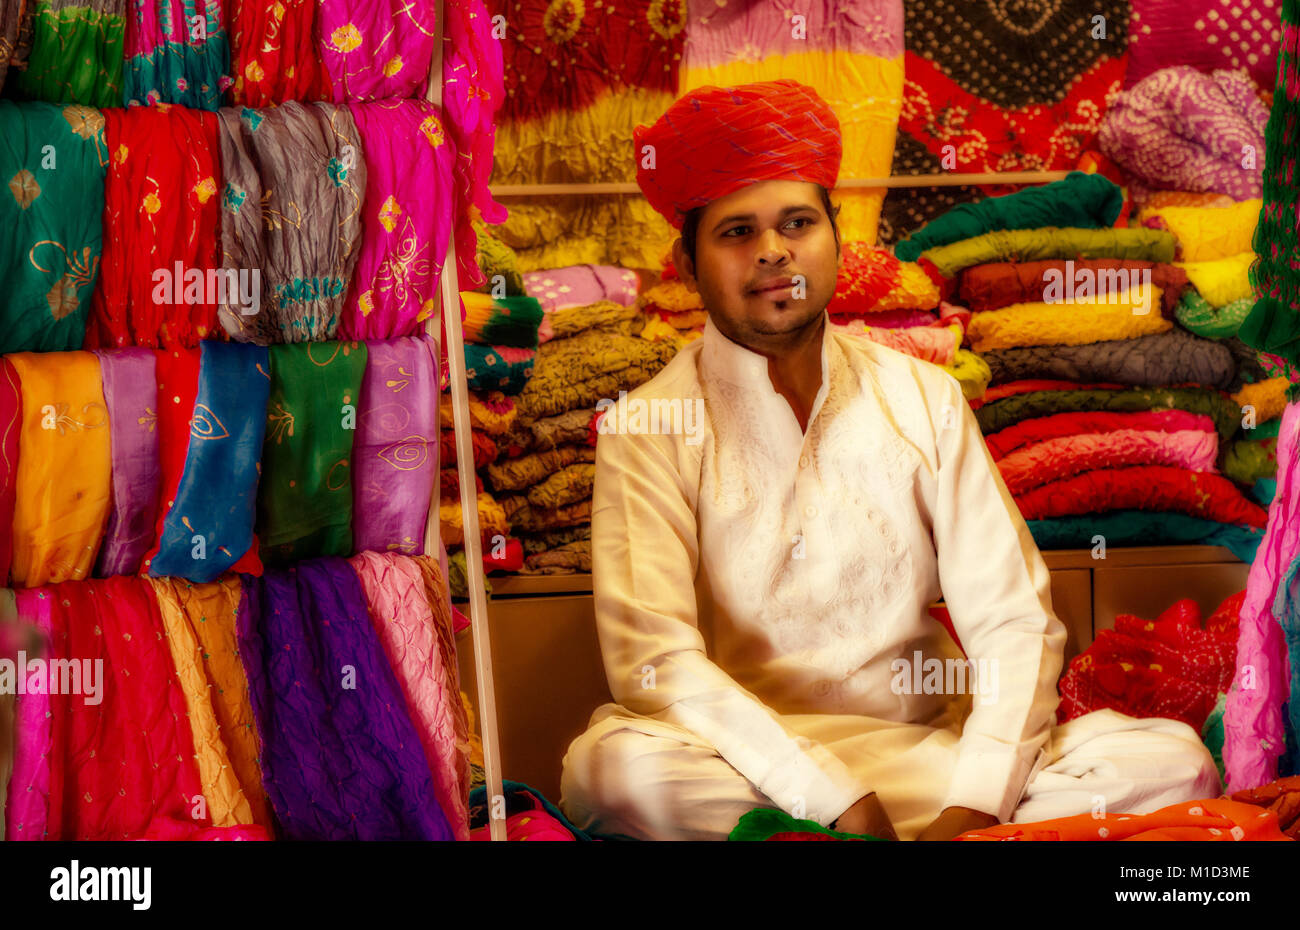 Junge Rajasthani männlichen tragen traditionelle Kleidung verkaufen Rajasthan kleid Materialien bei Mehrangarh Fort, Jodhpur, Rajasthan Indien. Stockfoto